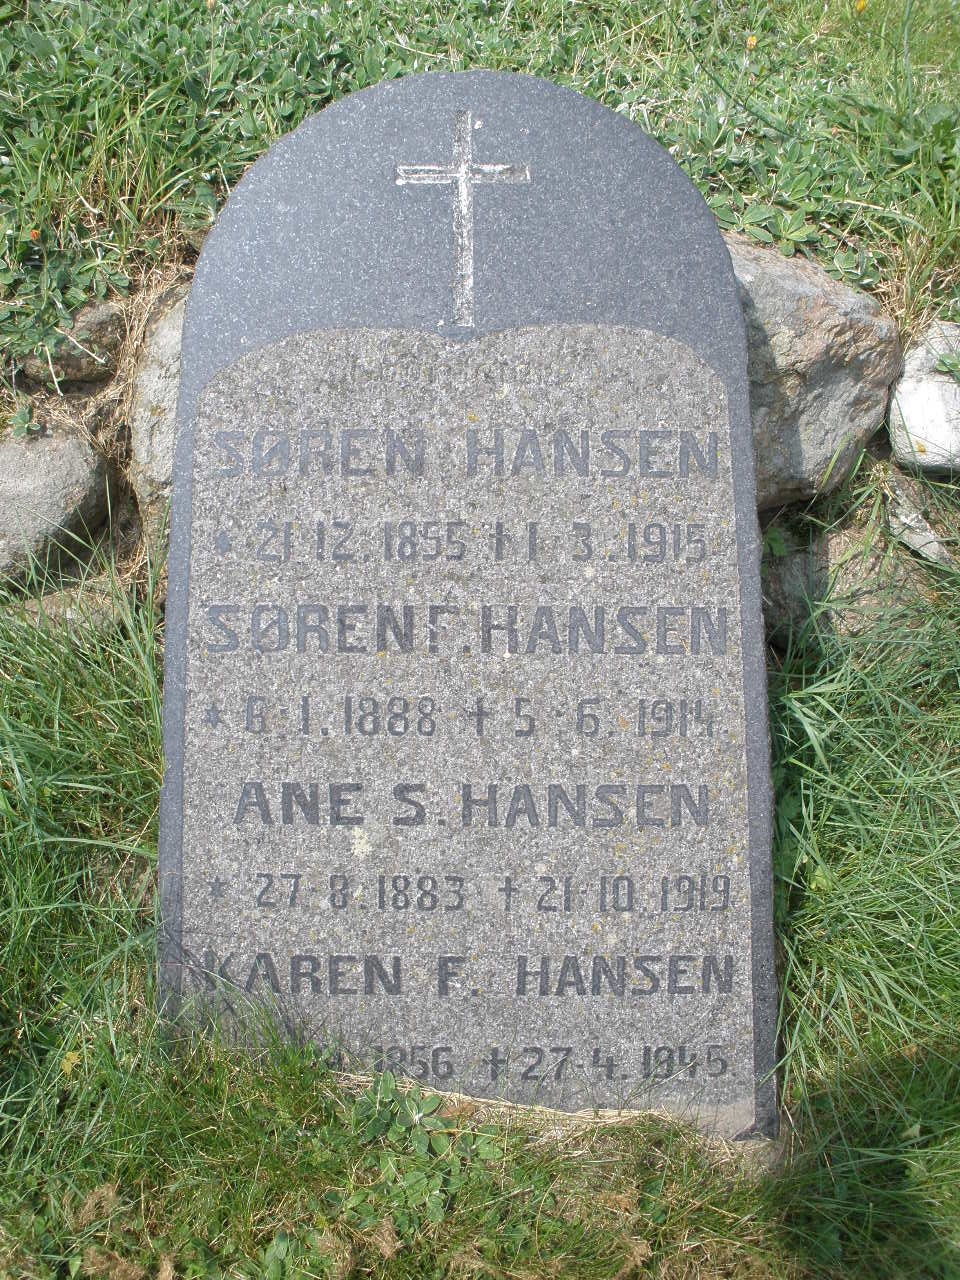 Karen F. Hansen.JPG